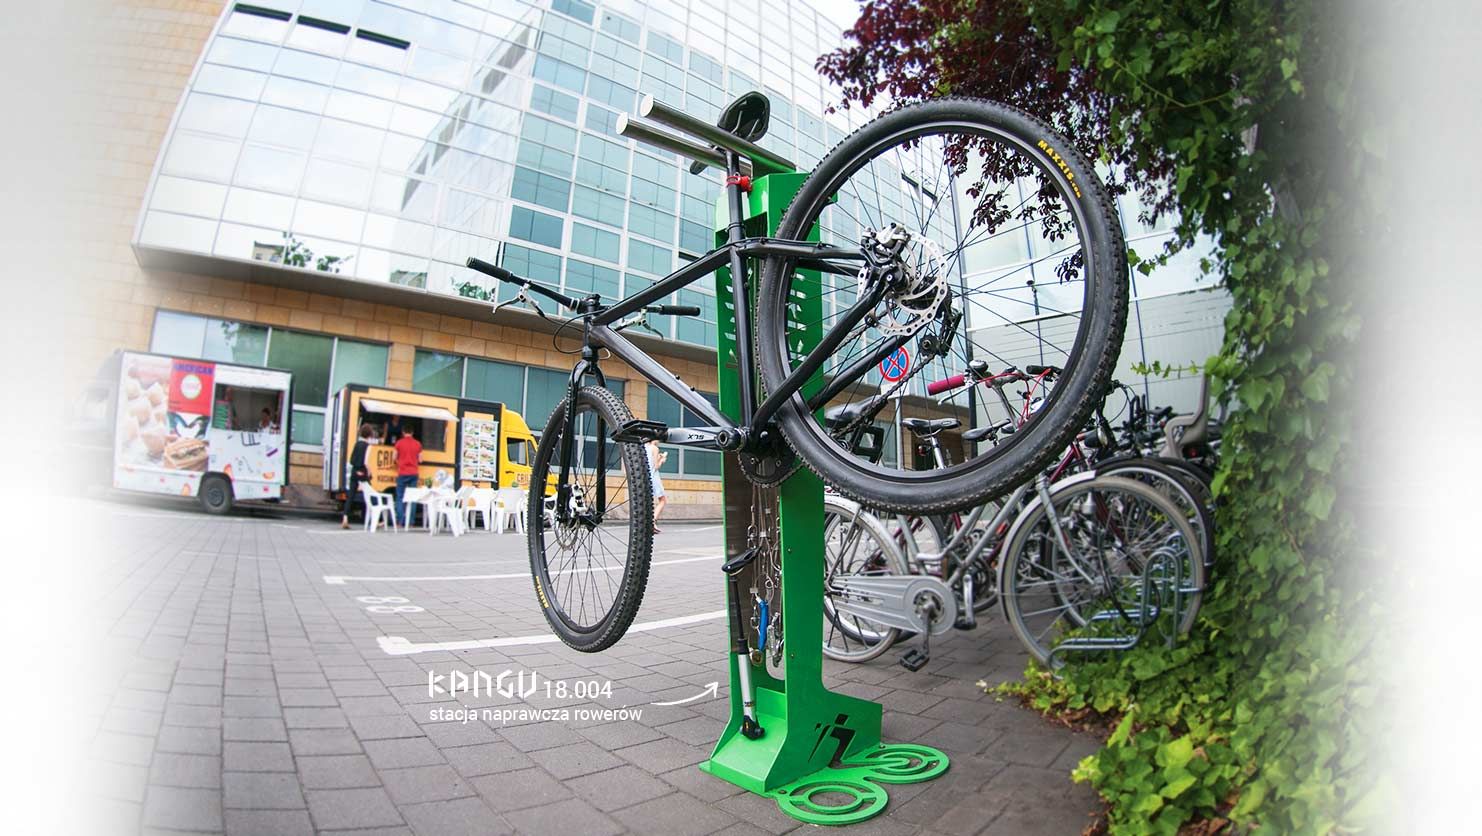 Stazioni di riparazione delle biciclette nelle aree urbane